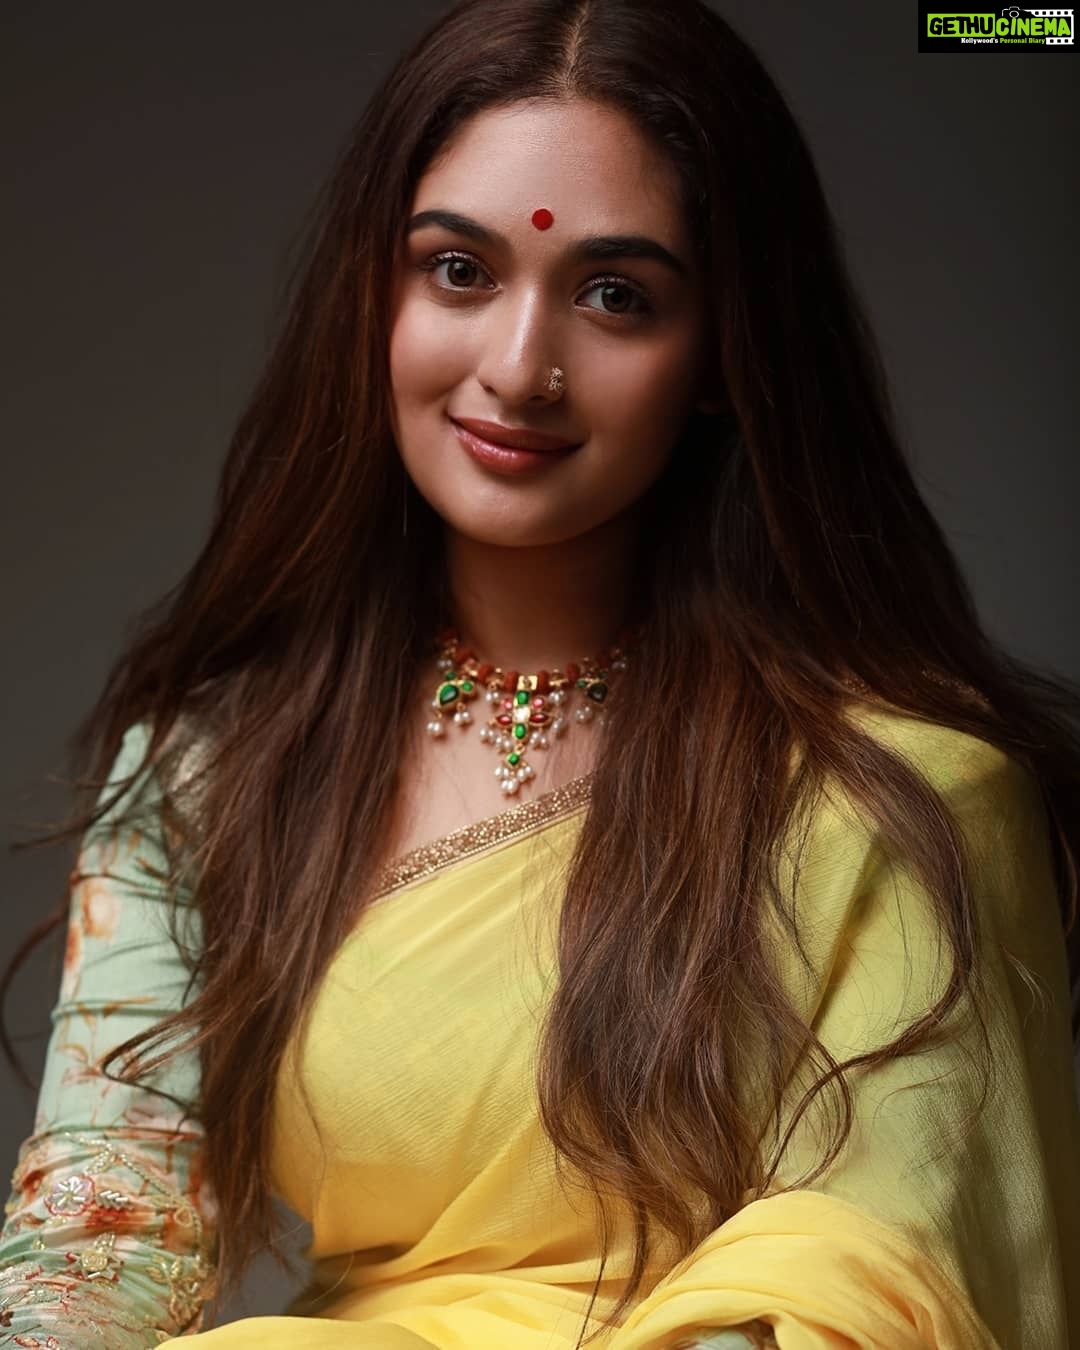 Actress Prayaga Martin HD Photos and Wallpapers October 2019 - Gethu Cinema